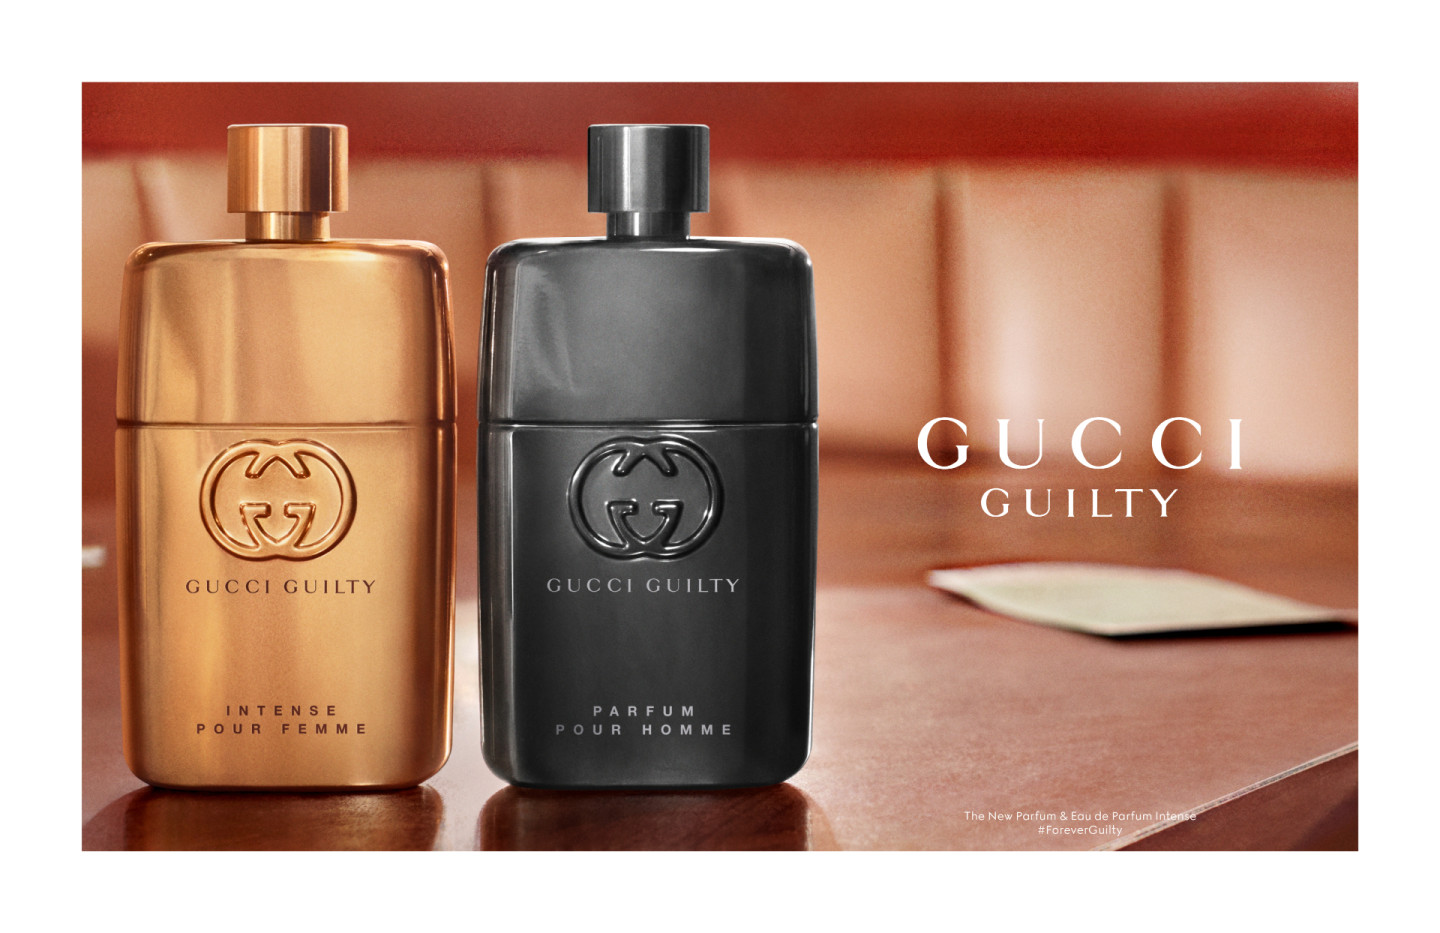 Женский аромат Gucci Guilty Eau de Parfum Intense Pour Femme и мужской аромат Gucci Guilty Parfum Pour Homme, Gucci